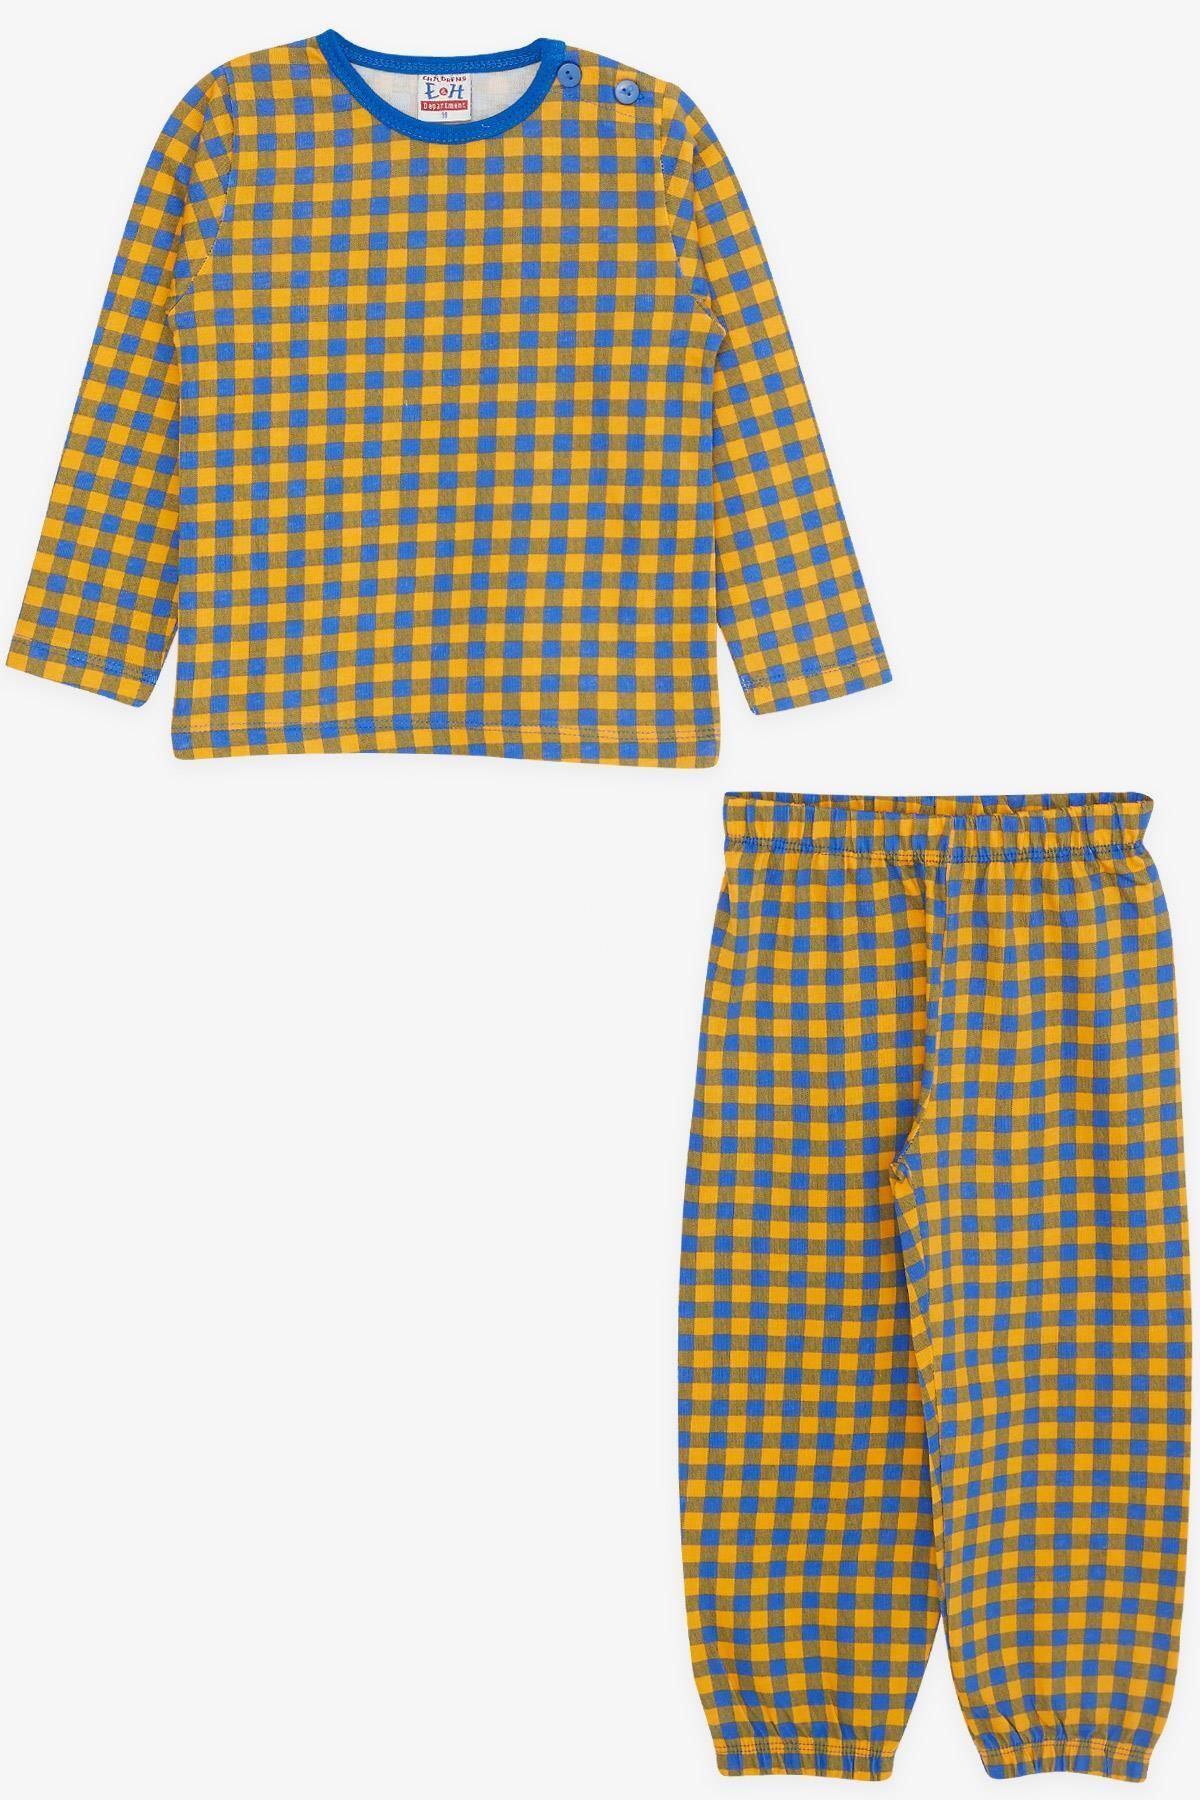 Breeze Girls & Boys Erkek Bebek Pijama Takımı Ekose Desenli 9 Ay-3 Yaş, Karışık Renk